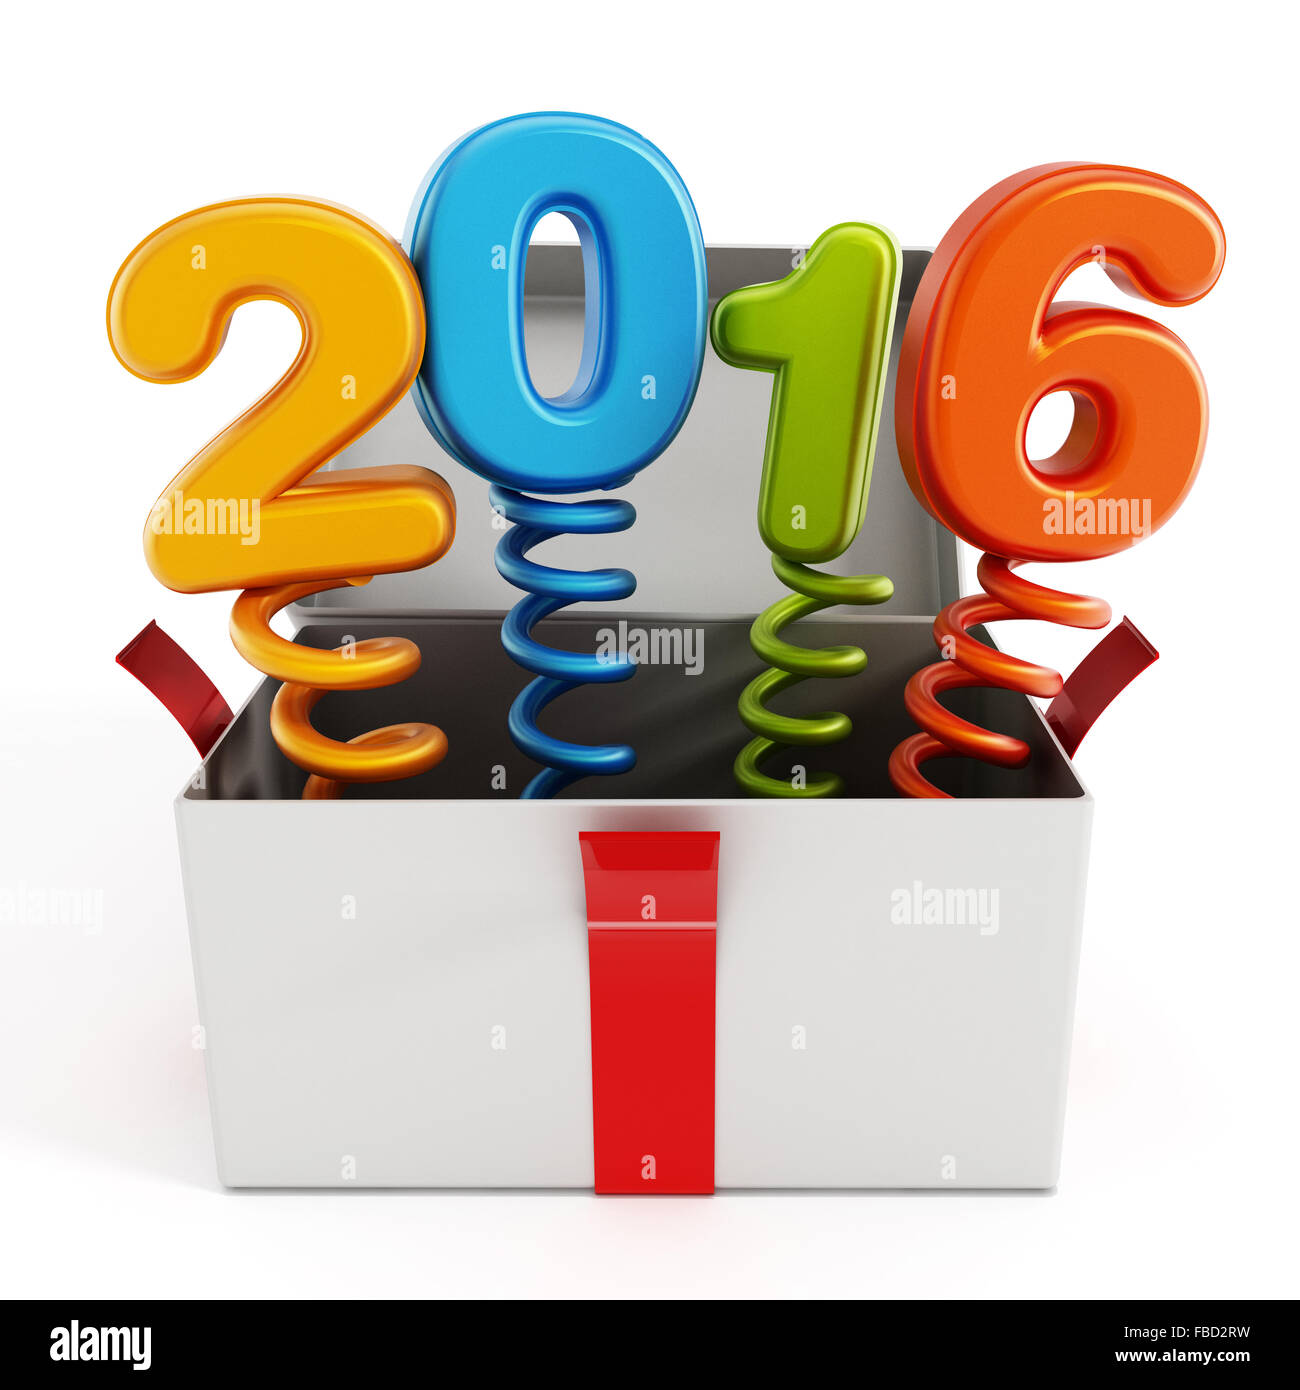 Reihe 2016 knallend aus der Geschenkbox isoliert auf weißem Hintergrund. Stockfoto